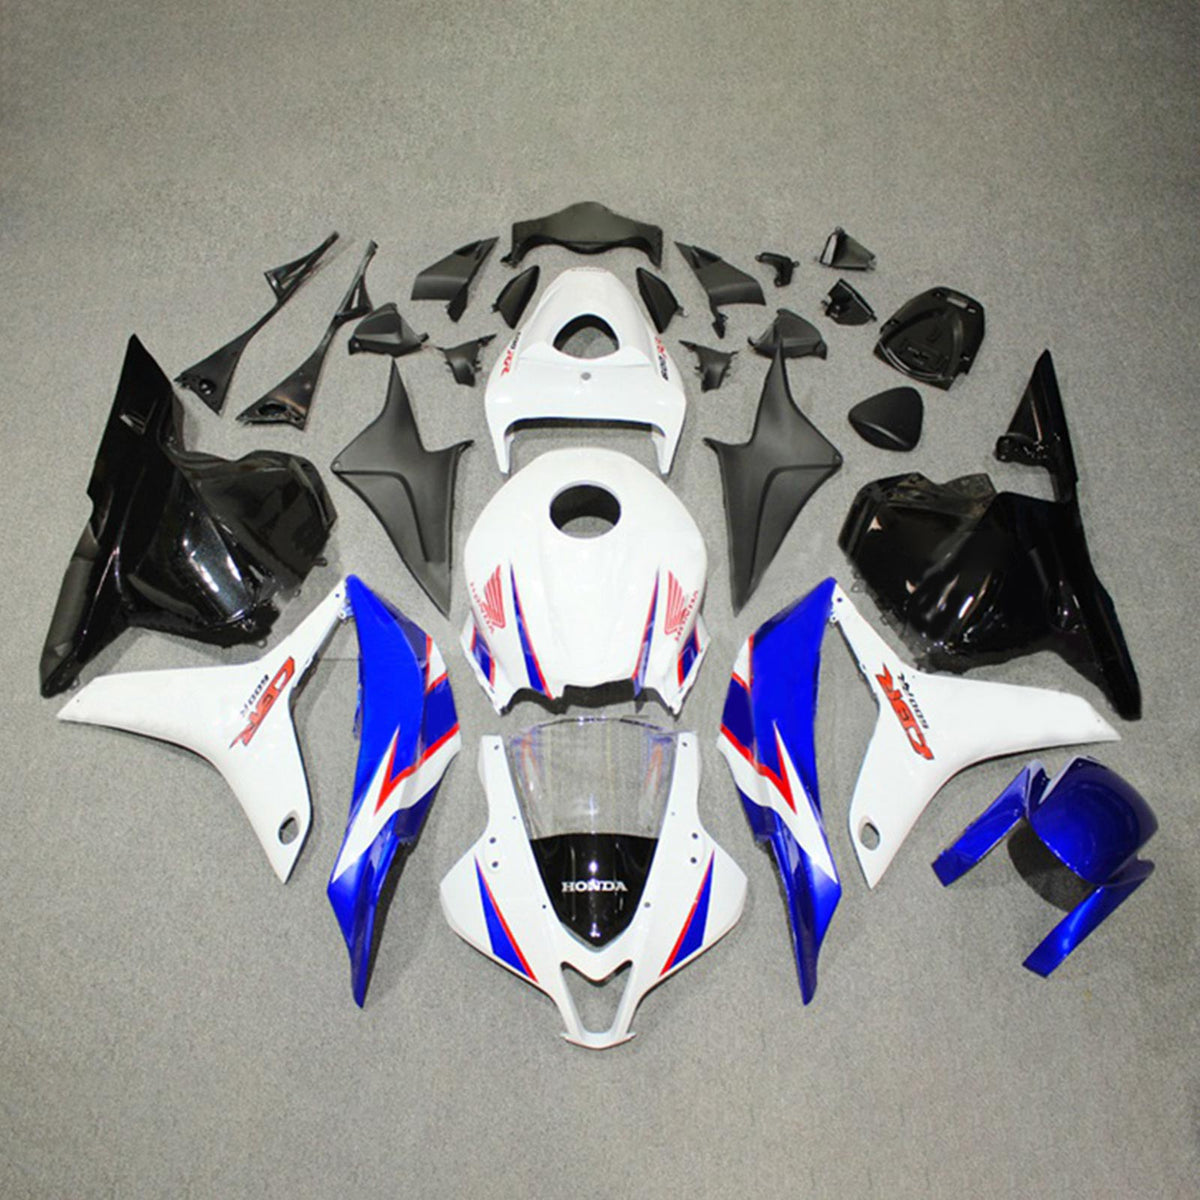 Kit carena Amotopart 2009-2012 Honda CBR600RR blu bianco nero